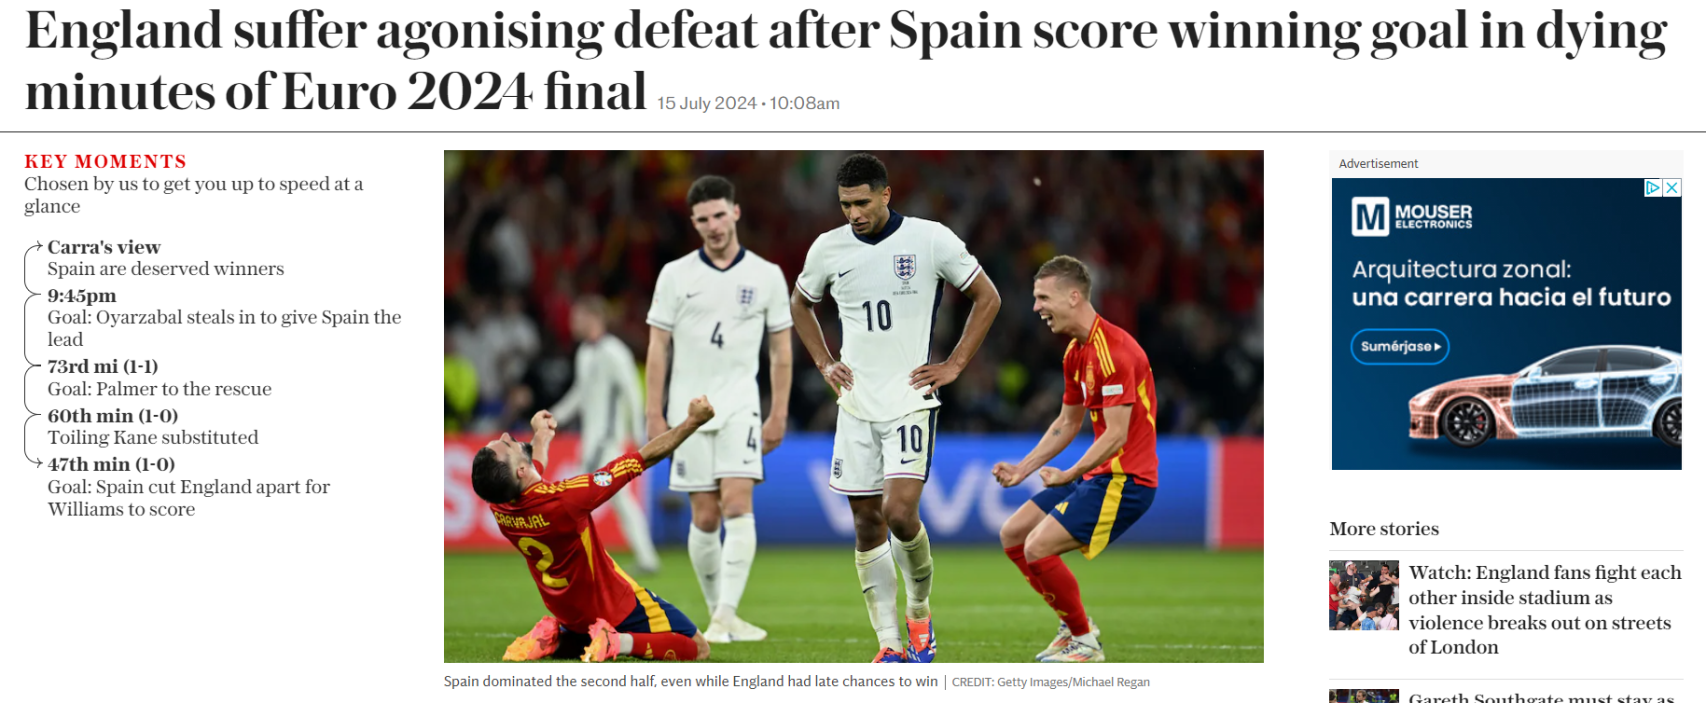 La crónica de 'The Telegraph' sobre la victoria de España en la final de la Eurocopa